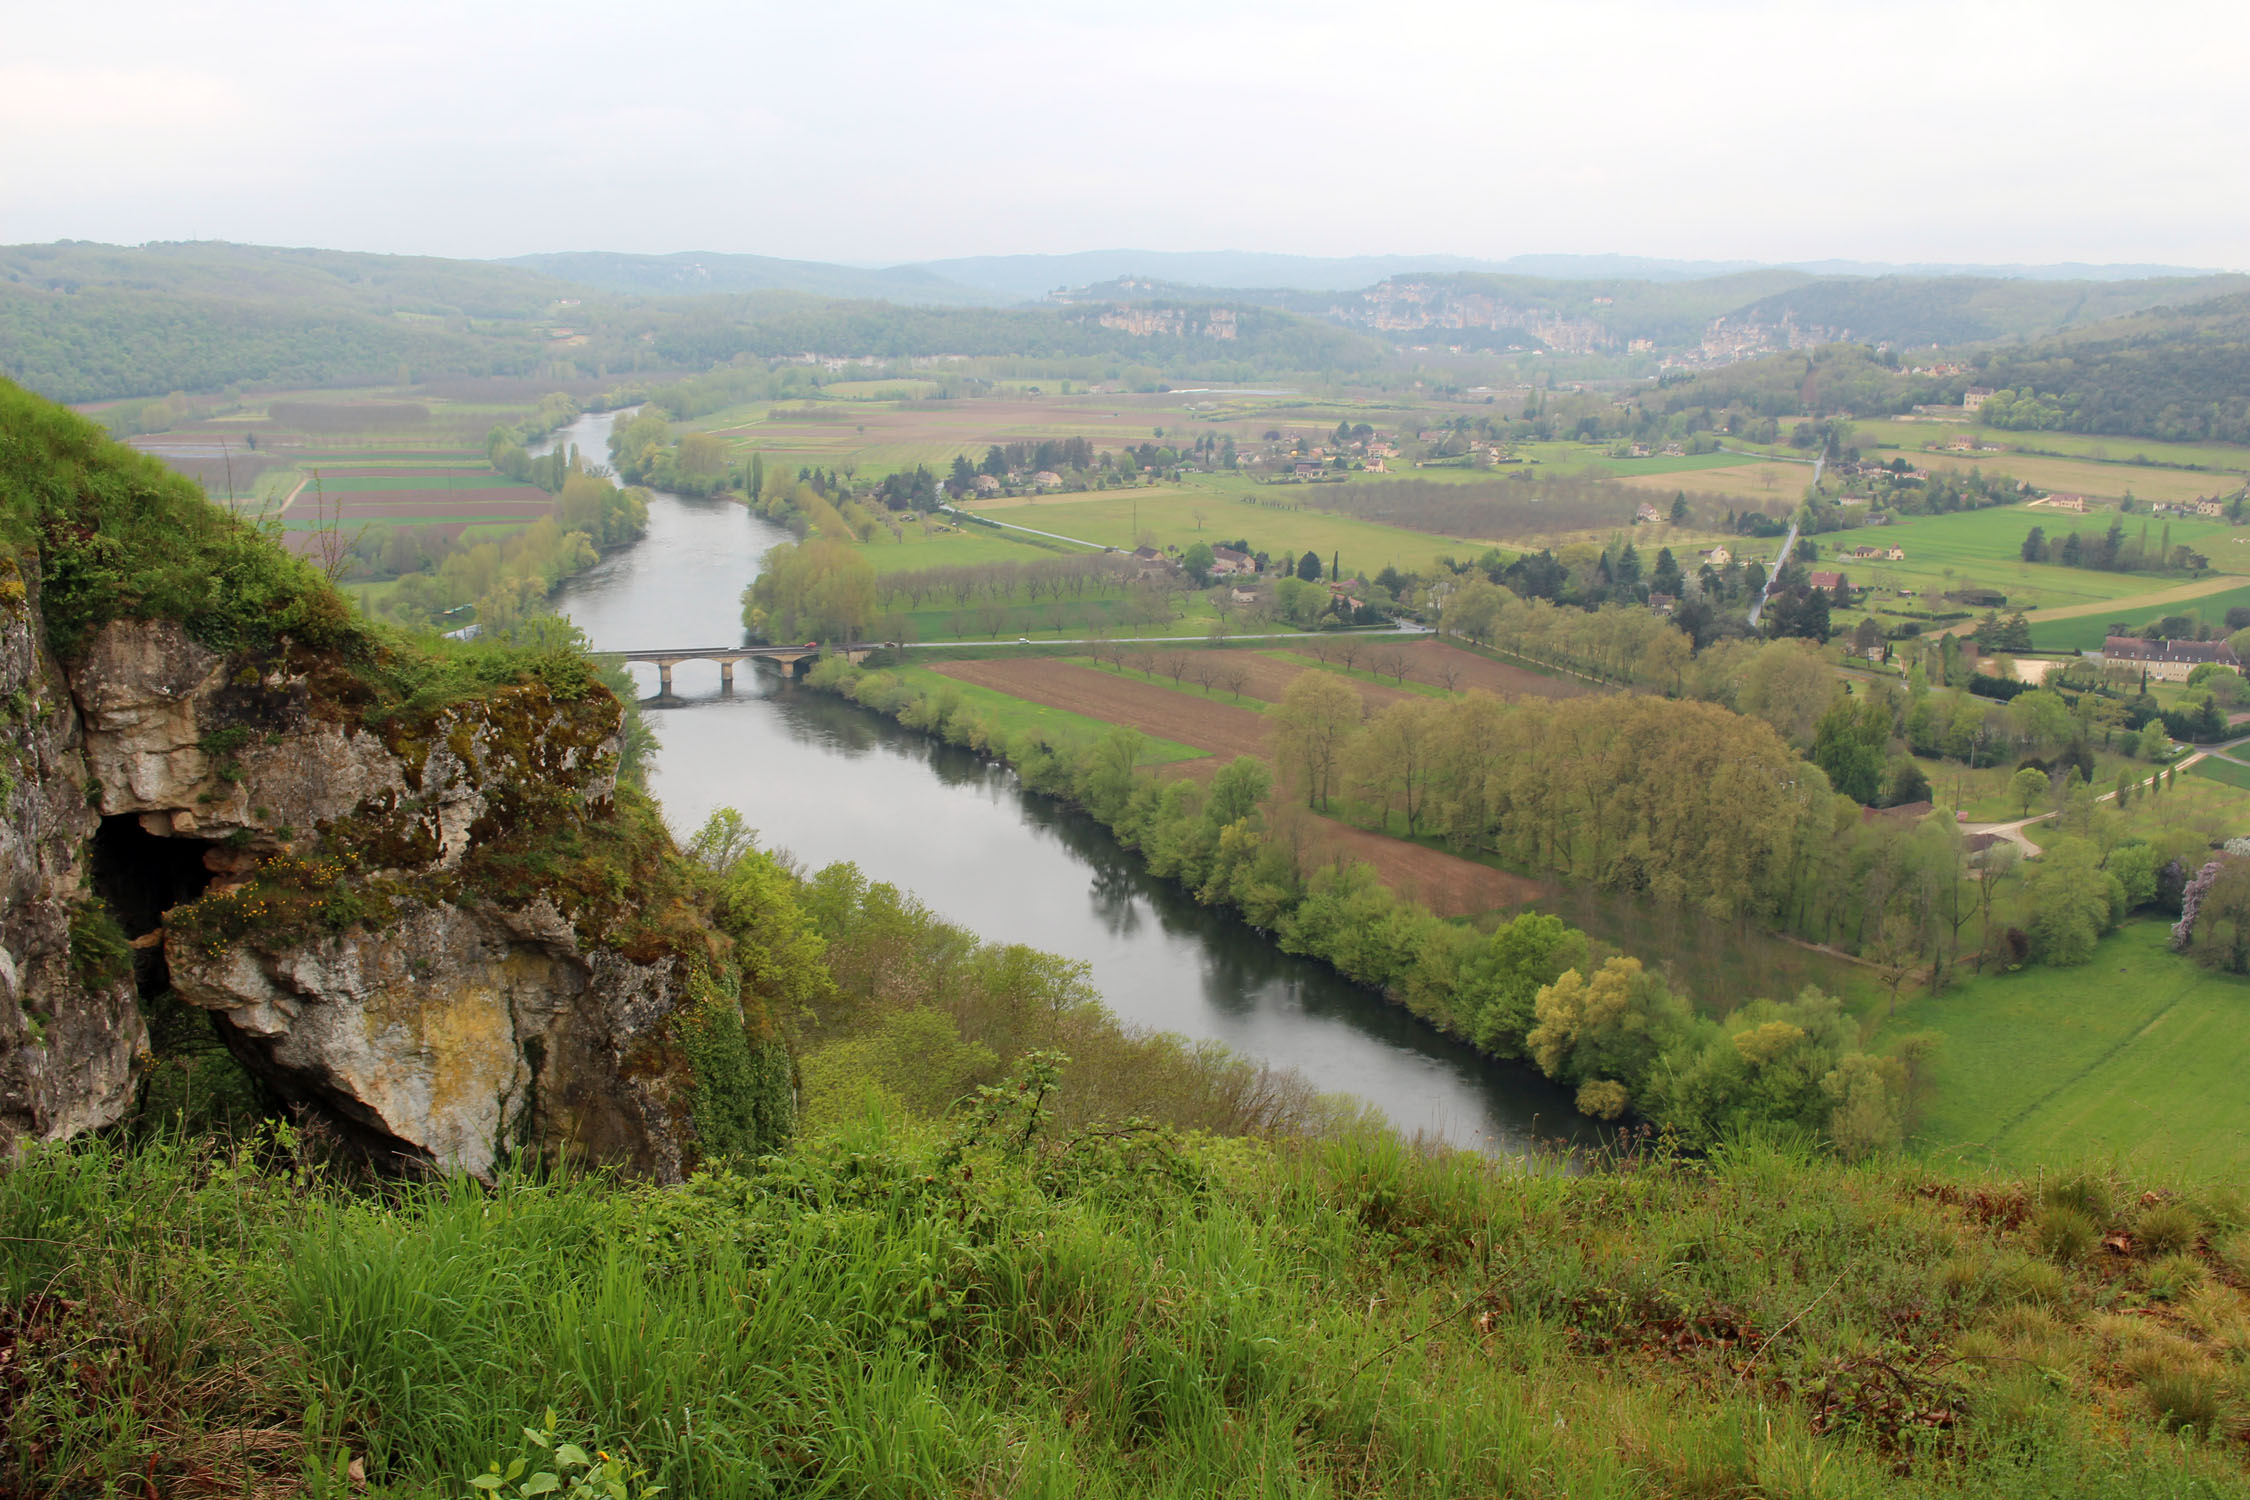 Domme, vallée de la Dordogne